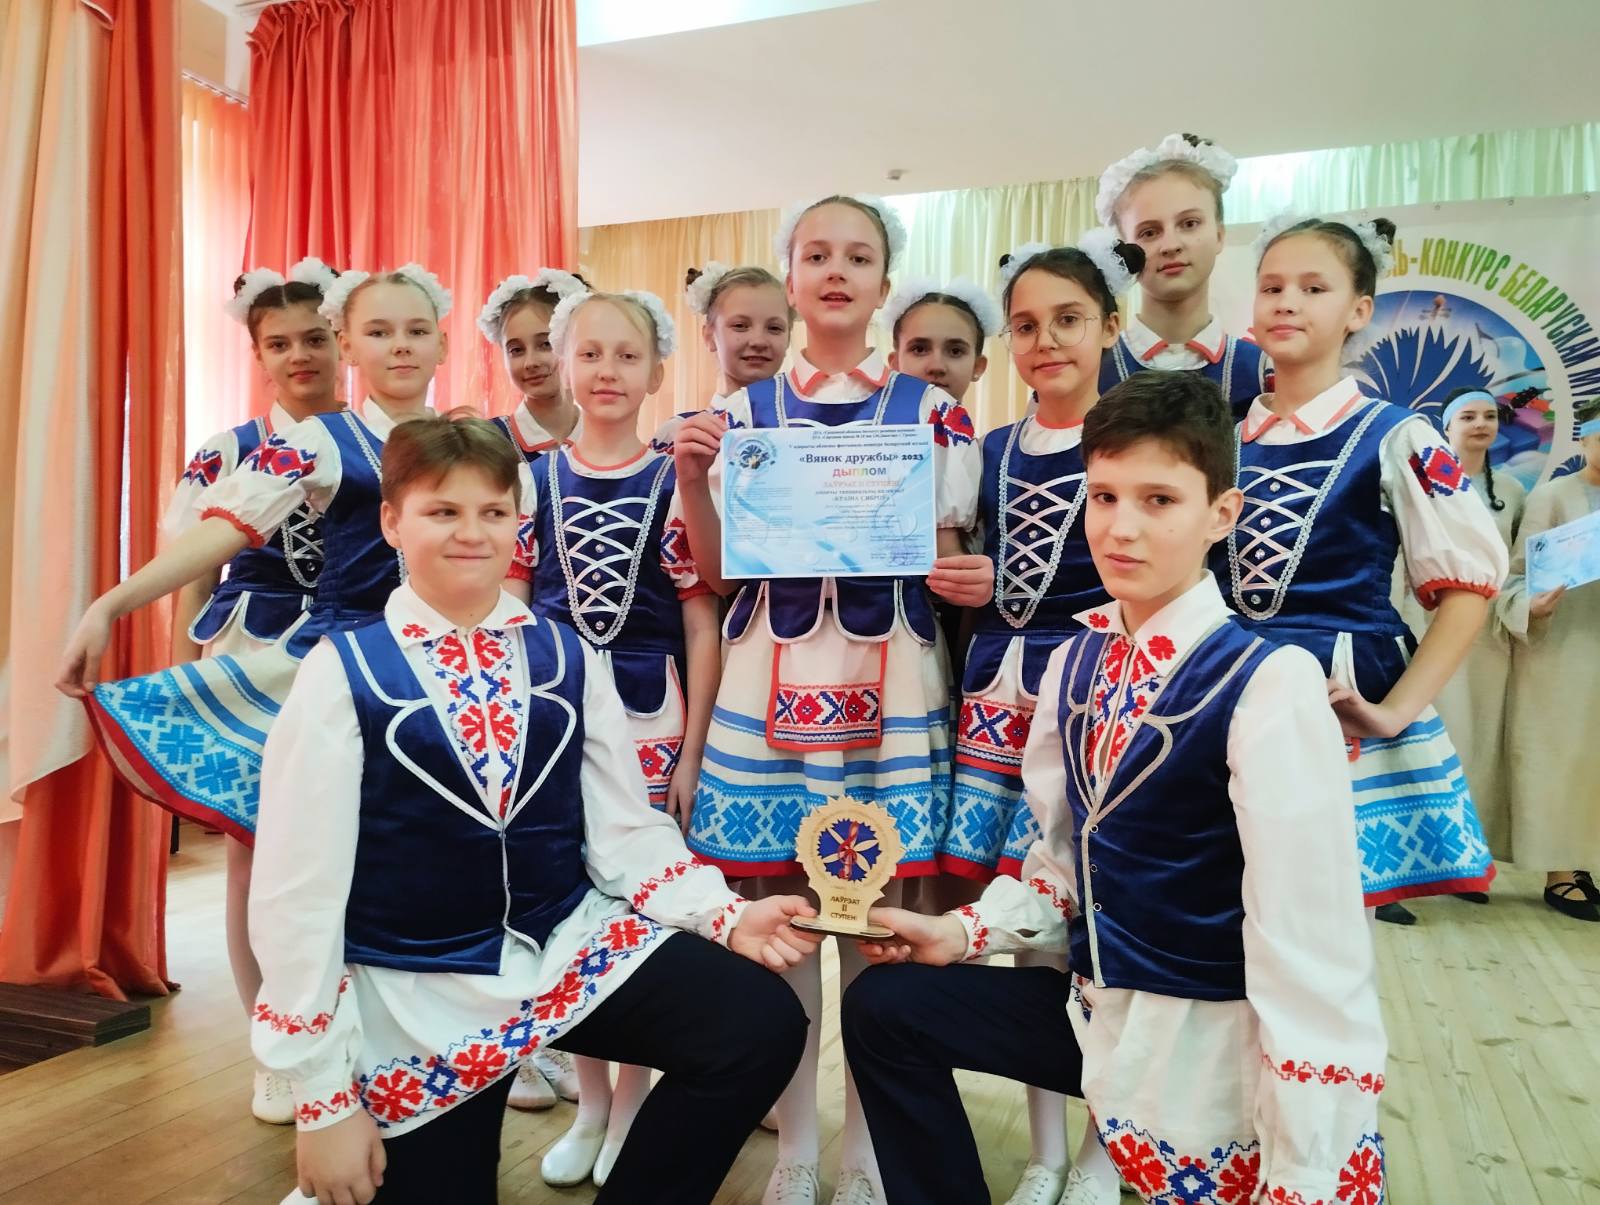 Танцевальный коллектив «Страны друзей» - лауреат 2 степени  областного конкурса «Вянок дружбы»